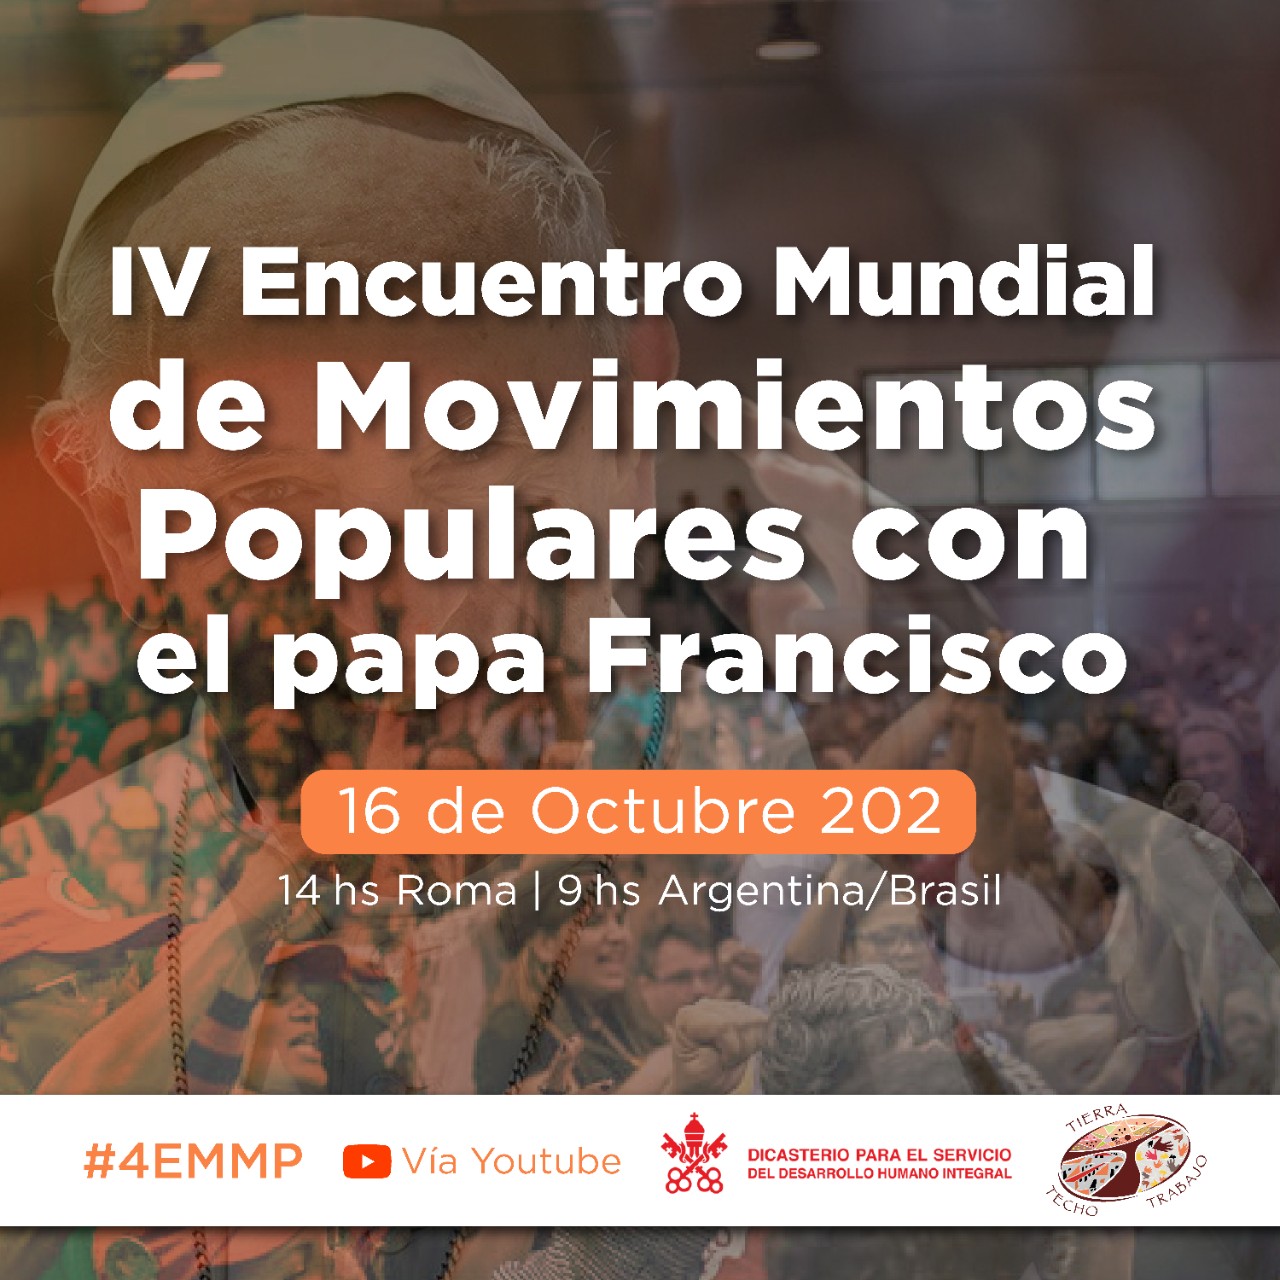 El Papa Francisco participa en la segunda fase del IV Encuentro Mundial de Movimientos Populares